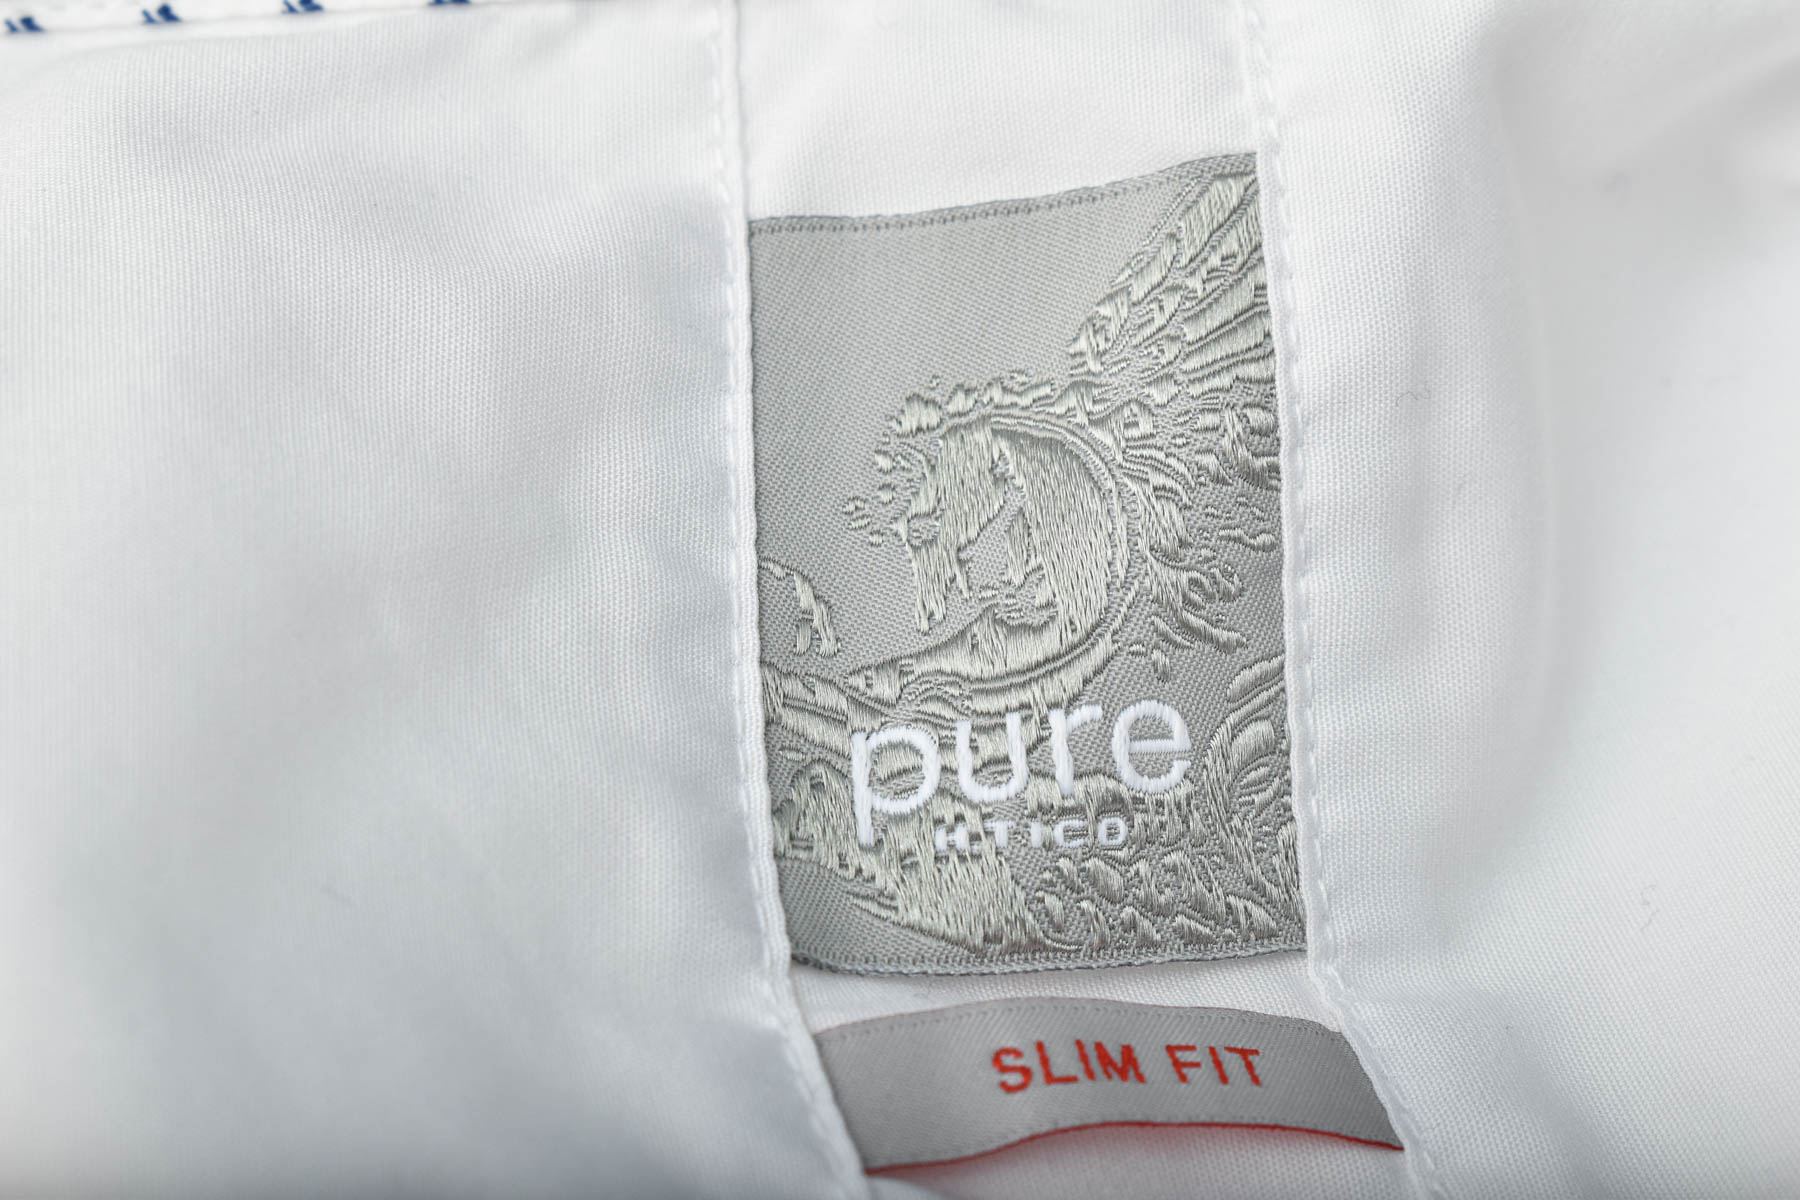 Ανδρικό πουκάμισο - Pure - 2